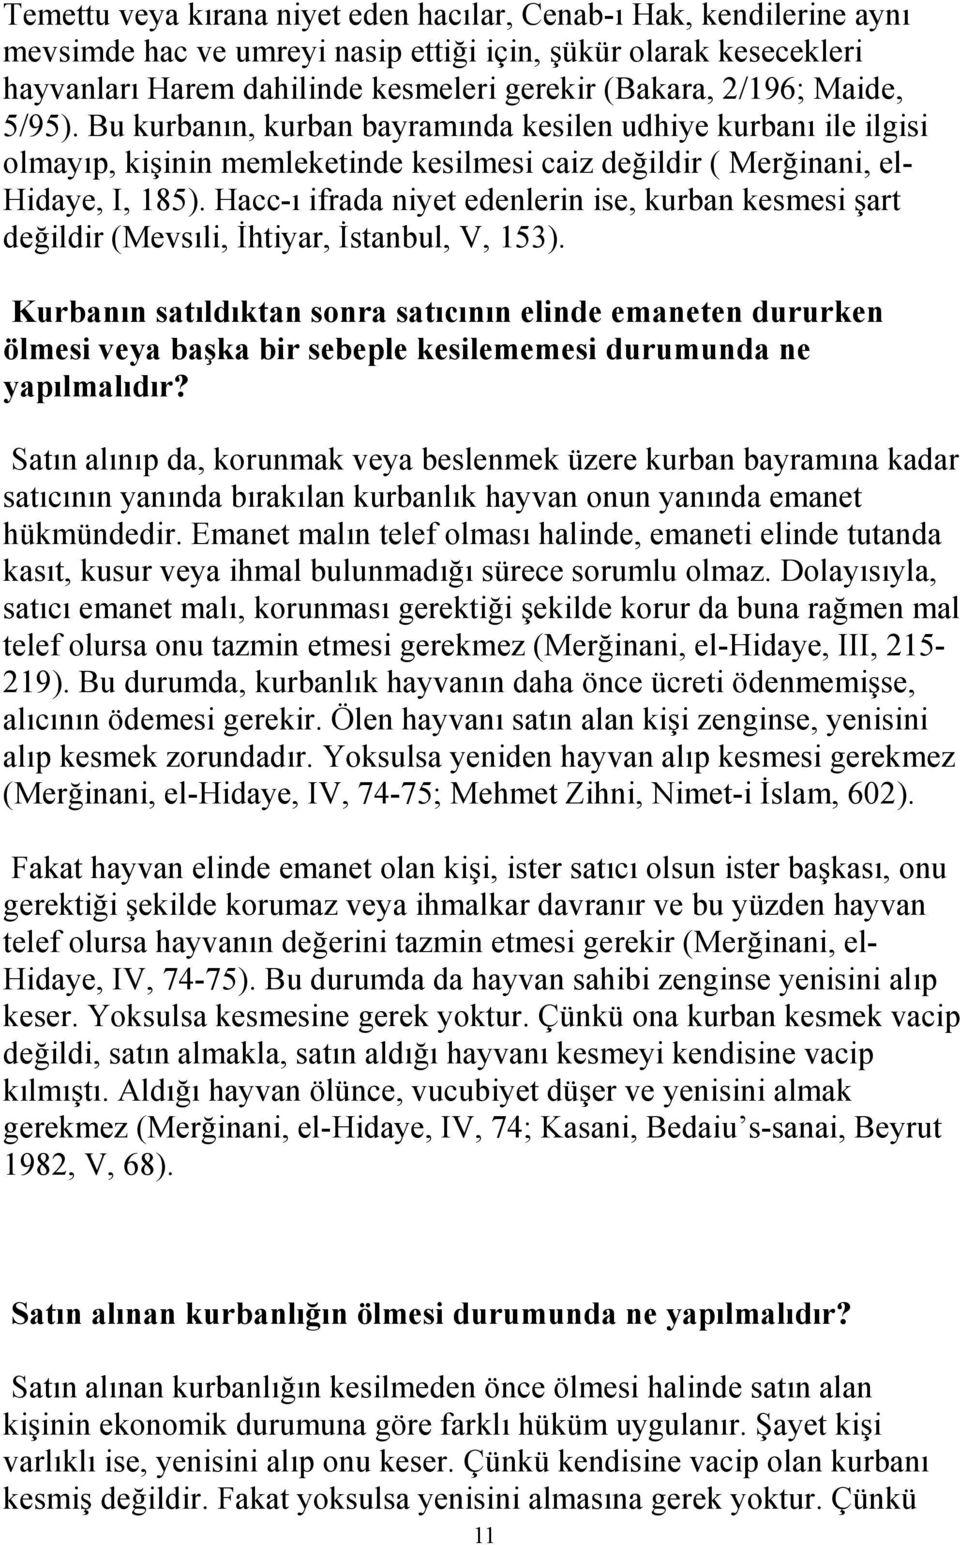 Hacc-ı ifrada niyet edenlerin ise, kurban kesmesi şart değildir (Mevsıli, İhtiyar, İstanbul, V, 153).